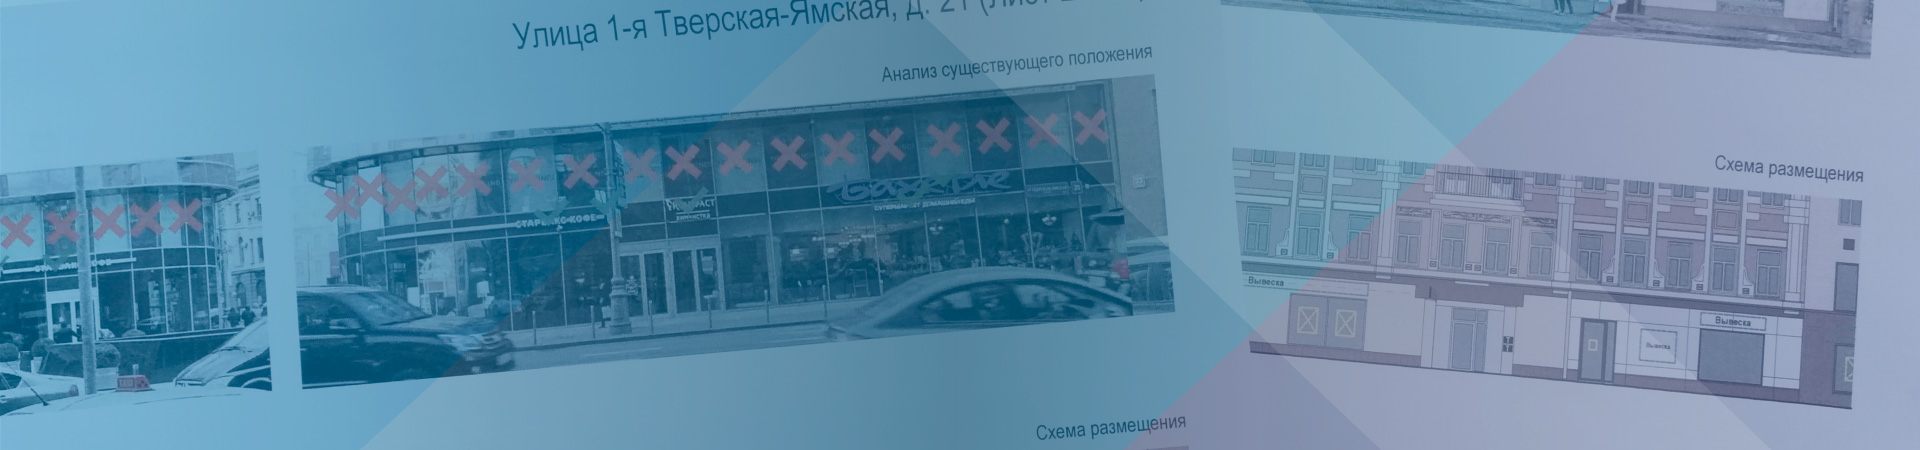 ГлавПроект - согласование рекламных конструкций в Москве